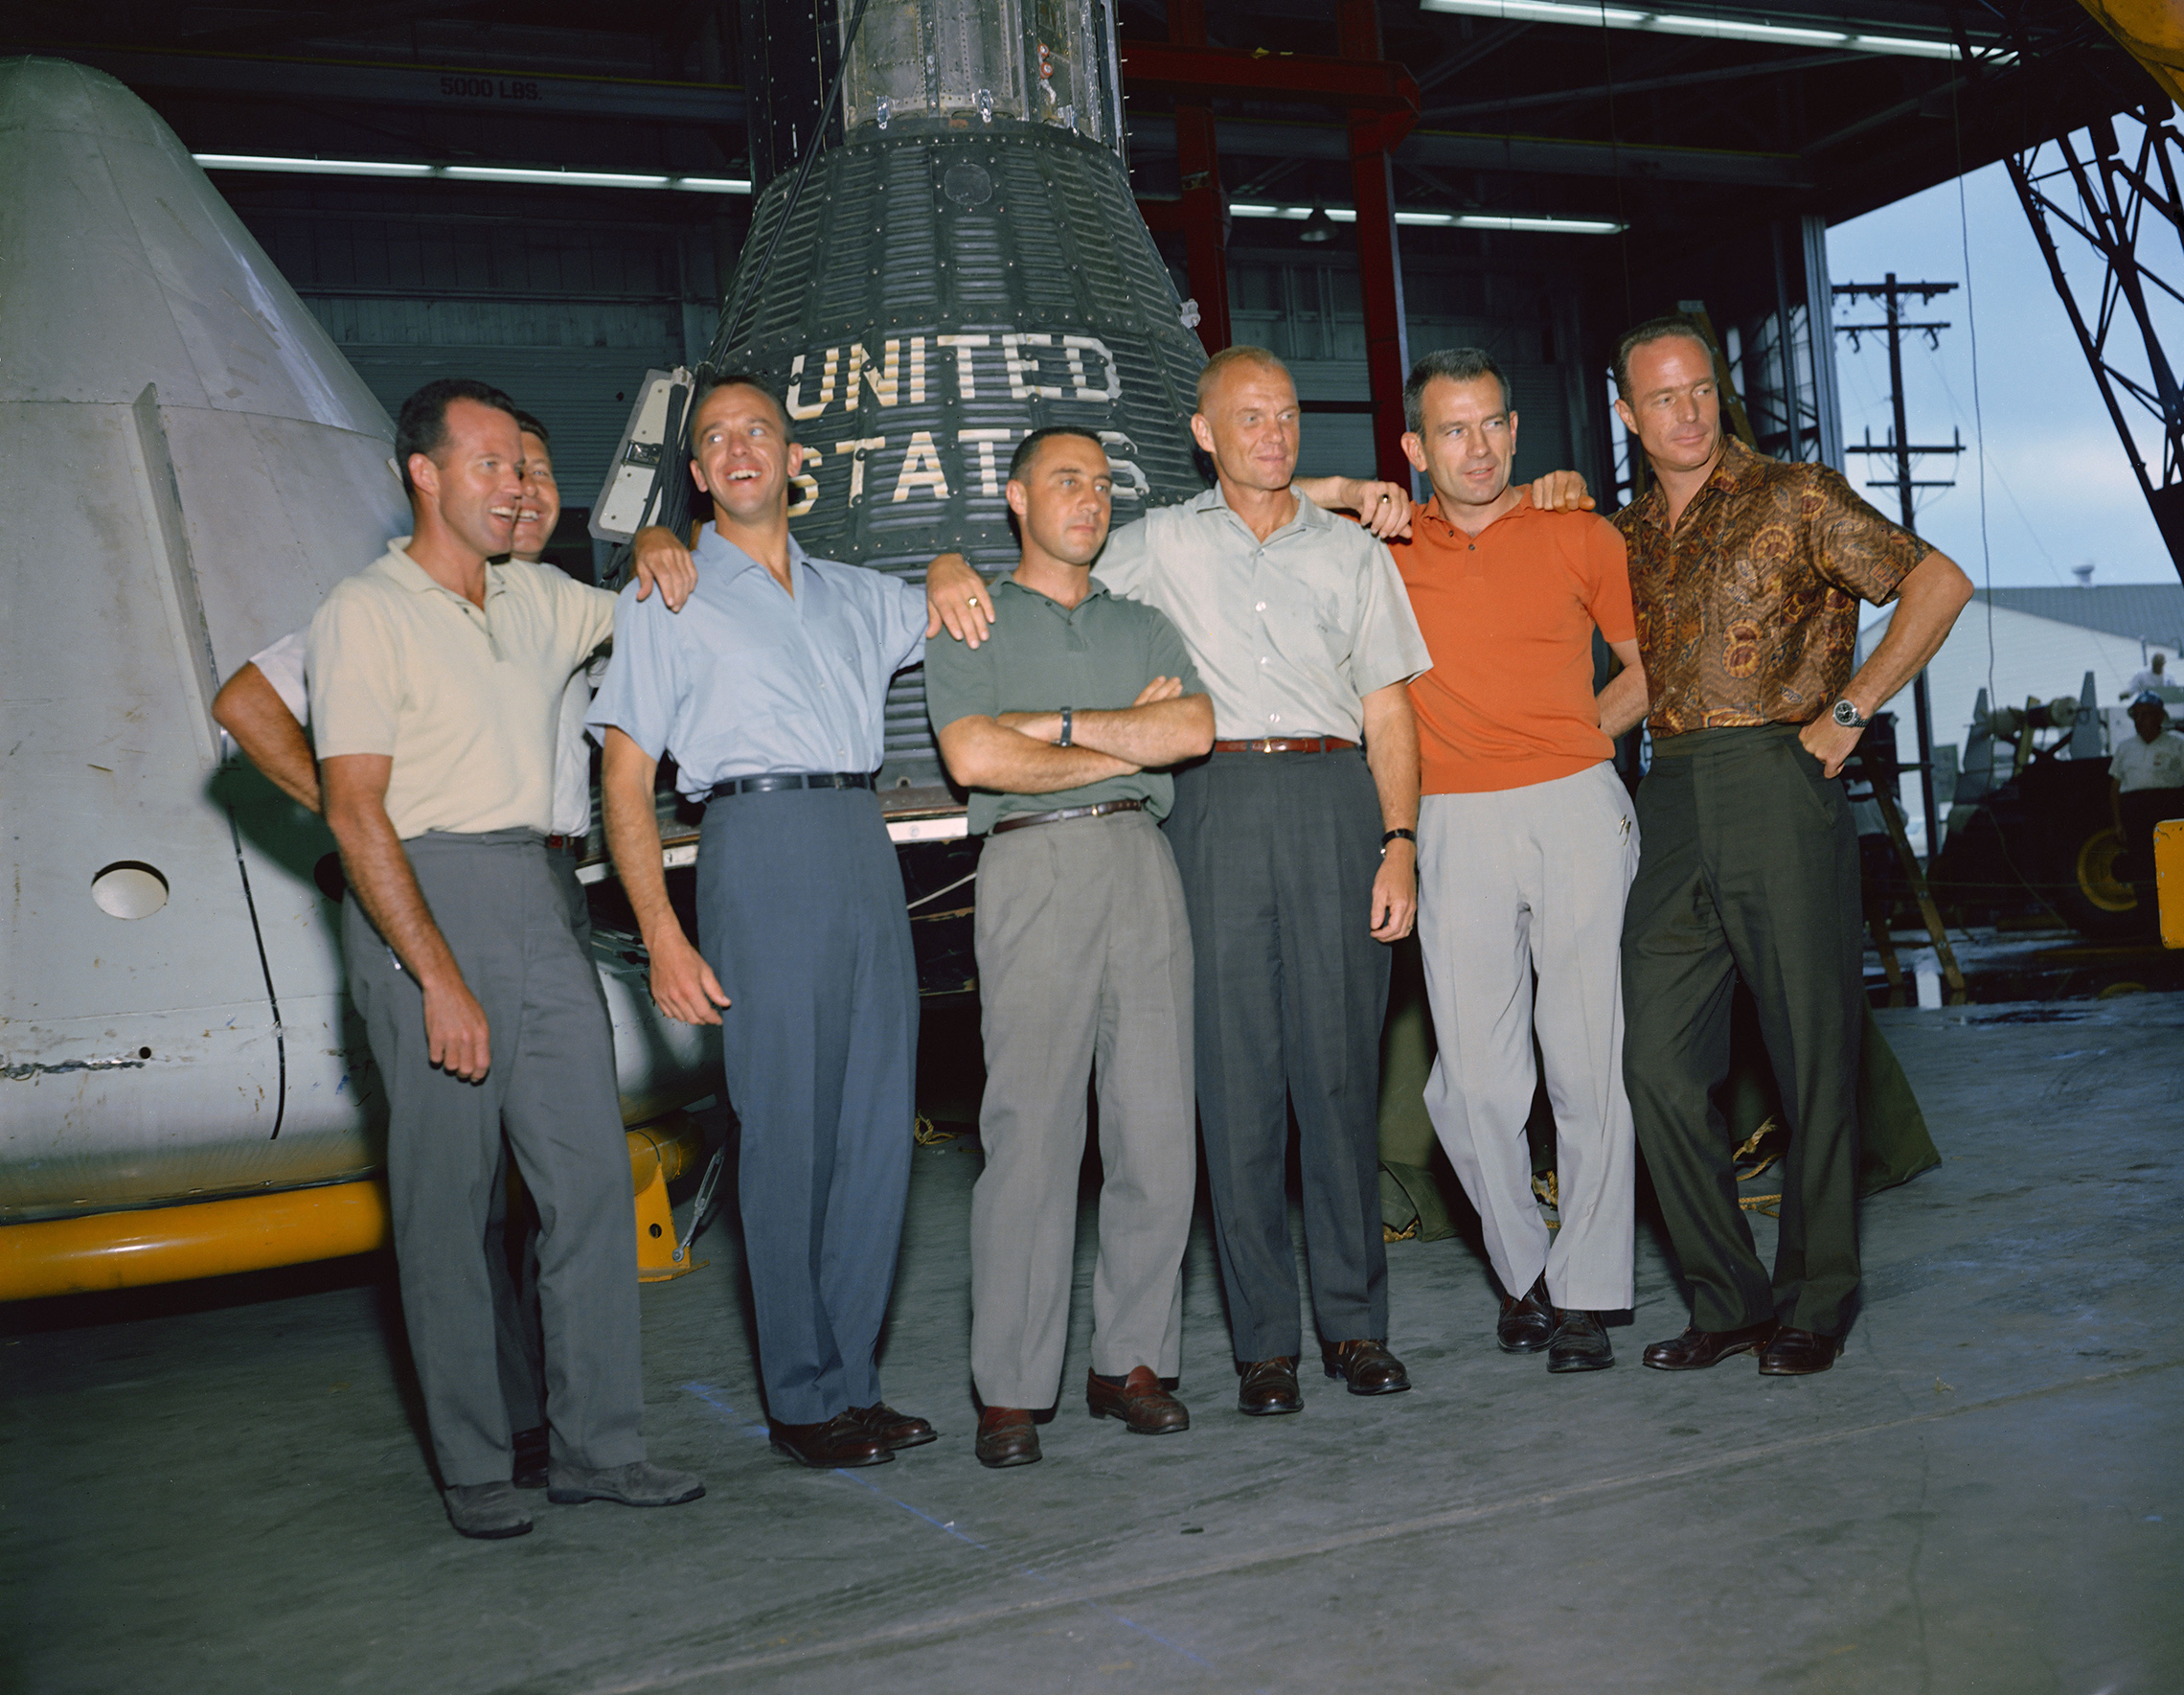 den 9 April 1959 meddelade Nasas första administratör, Dr. Keith Glennan, namnen på byråns första grupp astronauter vid en presskonferens i Washington, D. C. nu känd som Original Seven, de inkluderade tre Sjöflygare, M. Scott Carpenter, Walter M. Schirra Jr. och Alan B. Shepard Jr.; tre flygvapenpiloter, L. Gordon Cooper Jr., Virgil I. (Gus) Grissom och Donald K. (Deke) Slayton; tillsammans med Marine Corps flygare John H. Glenn Jr. detta gruppfoto av de ursprungliga Mercury-astronauterna togs i juni 1963 på Manned Spacecraft Center (MSC), nu Johnson Space Center, i Houston, Texas. Astronauterna är från vänster till höger: Cooper, Schirra, Shepard, Grissom, Glenn, Slayton och Carpenter. Project Mercury blev Nasas första stora företag. Programmets mål var att placera ett mänskligt betygsatt rymdfarkoster i omlopp runt jorden, observera astronauternas prestanda under sådana förhållanden och säkert återställa astronauten och rymdfarkosten. Mercury-flygningarna visade att människor kunde leva och arbeta i rymden och banade väg för Gemini-och Apollo-programmen samt för all ytterligare mänsklig rymdflygning. (NASA)'s first administrator, Dr. Keith Glennan, announced the names of the agency's first group of astronauts at a news conference in Washington, D.C. Now known as the "Original Seven," they included three Naval aviators, M. Scott Carpenter, Walter M. Schirra Jr., and Alan B. Shepard Jr.; three Air Force pilots, L. Gordon Cooper Jr., Virgil I. (Gus) Grissom, and Donald K. (Deke) Slayton; along with Marine Corps aviator John H. Glenn Jr. This group photo of the original Mercury astronauts was taken in June 1963 at the Manned Spacecraft Center (MSC), now Johnson Space Center, in Houston, Texas. The astronauts are, left to right: Cooper, Schirra, Shepard, Grissom, Glenn, Slayton and Carpenter. Project Mercury became NASA's first major undertaking. The objectives of the program were to place a human-rated spacecraft into orbit around Earth, observe the astronauts' performance in such conditions and safely recover the astronaut and the spacecraft. The Mercury flights proved that humans could live and work in space, and paved the way for the Gemini and Apollo programs as well as for all further human spaceflight. (NASA)